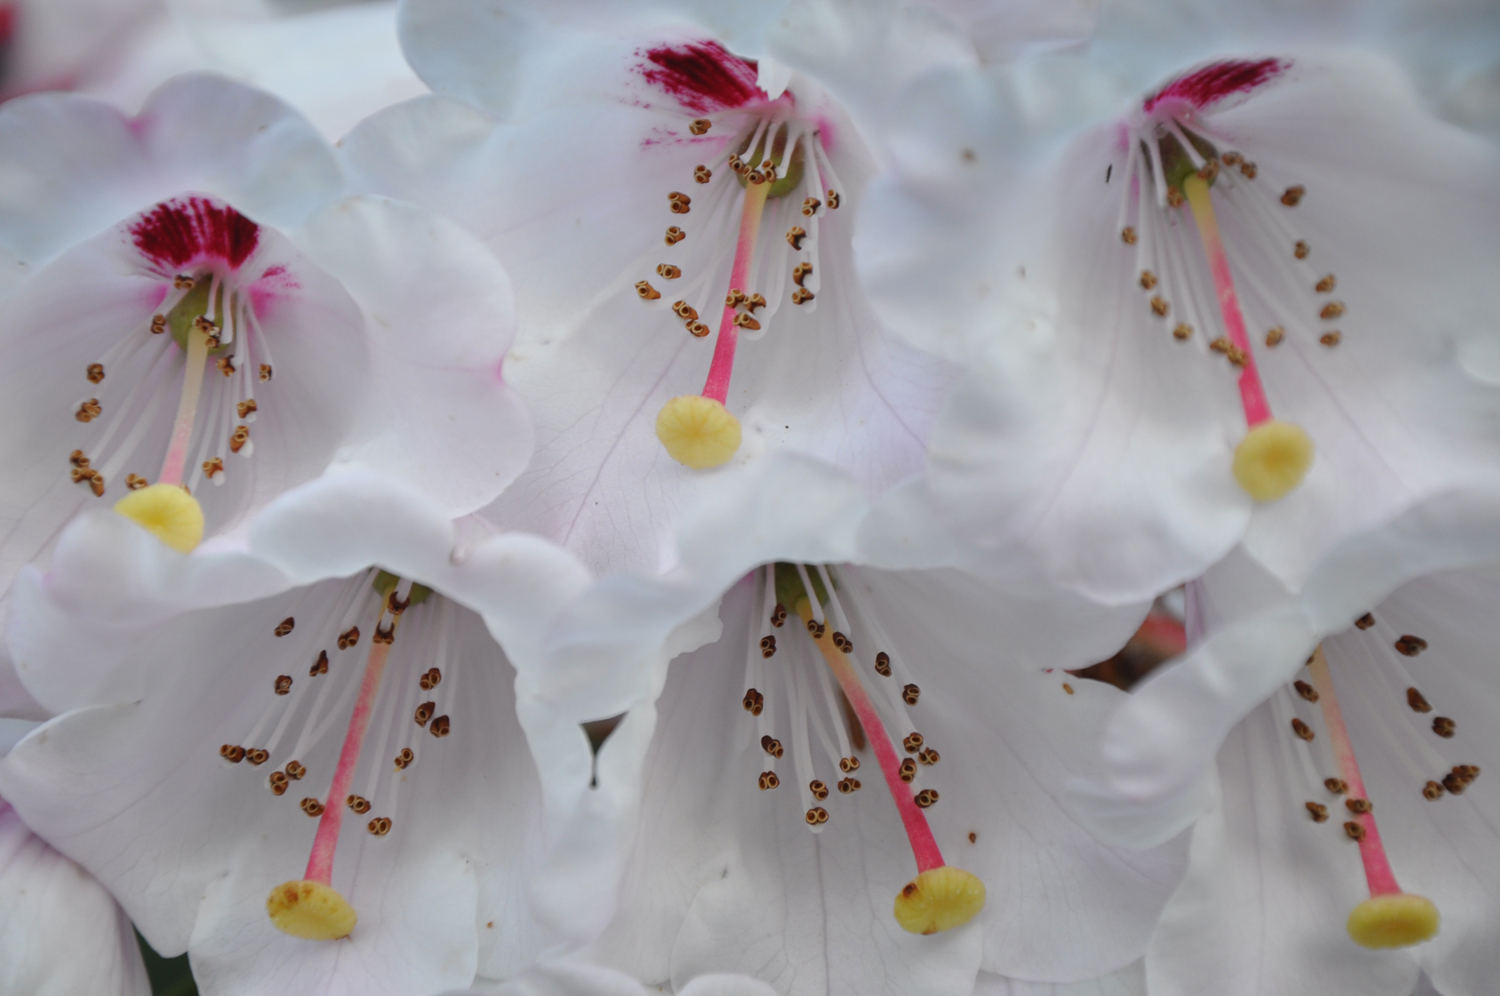 Sechs weiße glockenförmige Blüten mit buntem Innenleben